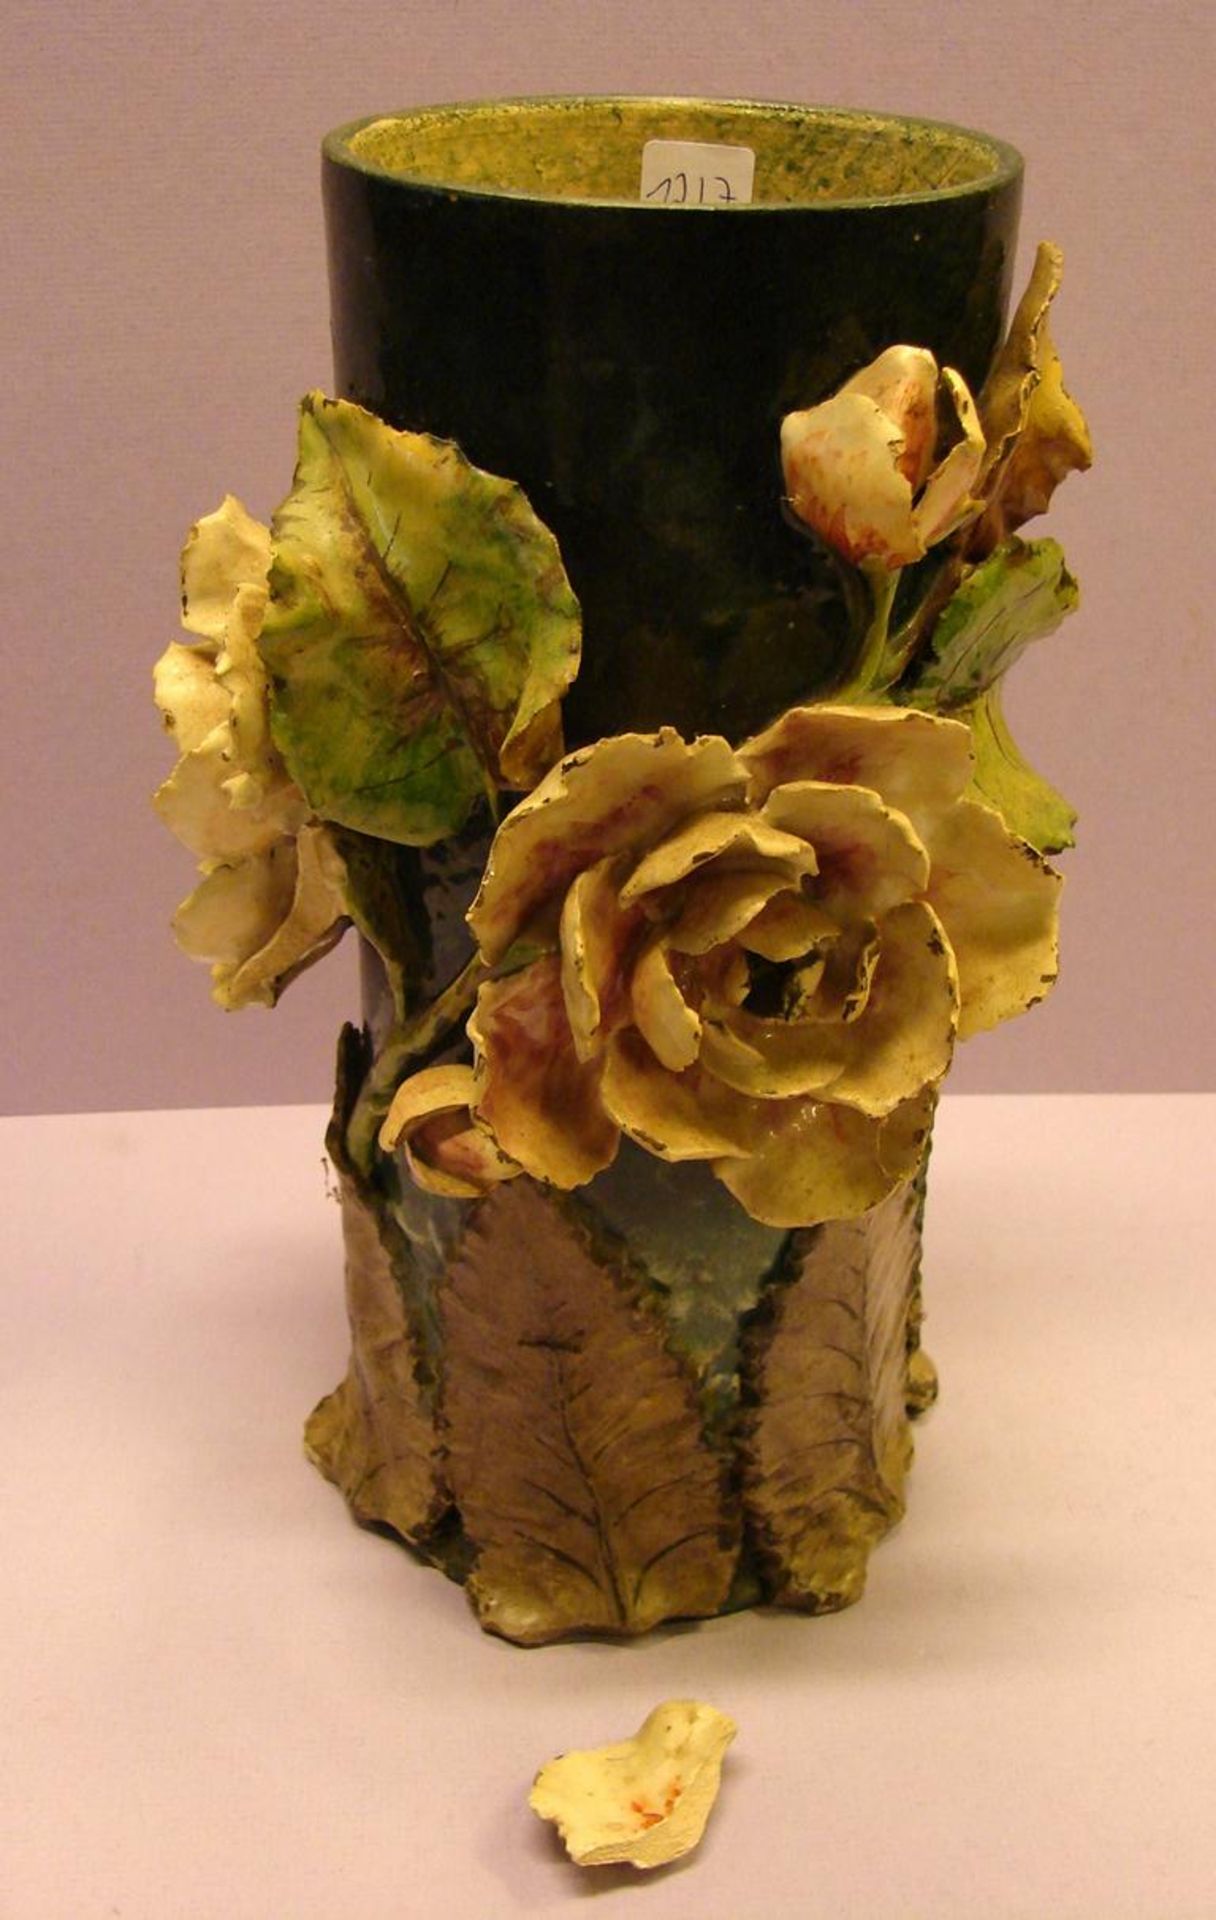 Vase, Keramik, Blumen/Blätter aufgesetzt, H.ca. 40 cm (kl. Beschädigungen)- - -22.00 % buyer's